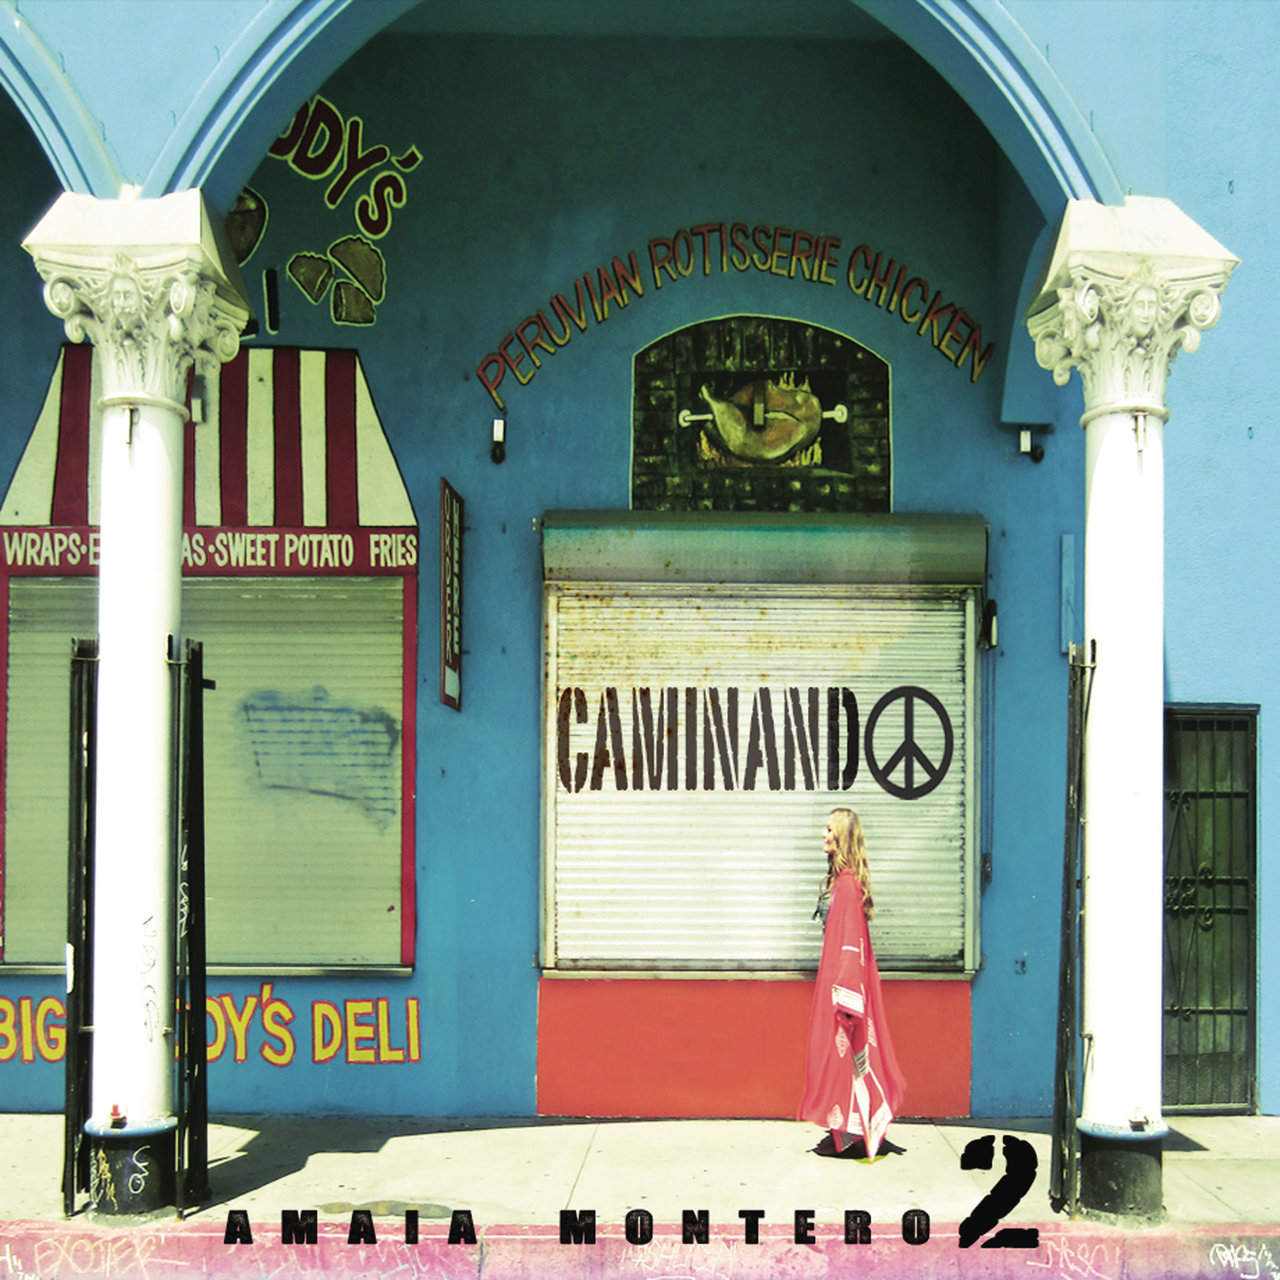 Amaia Montero — Caminando cover artwork